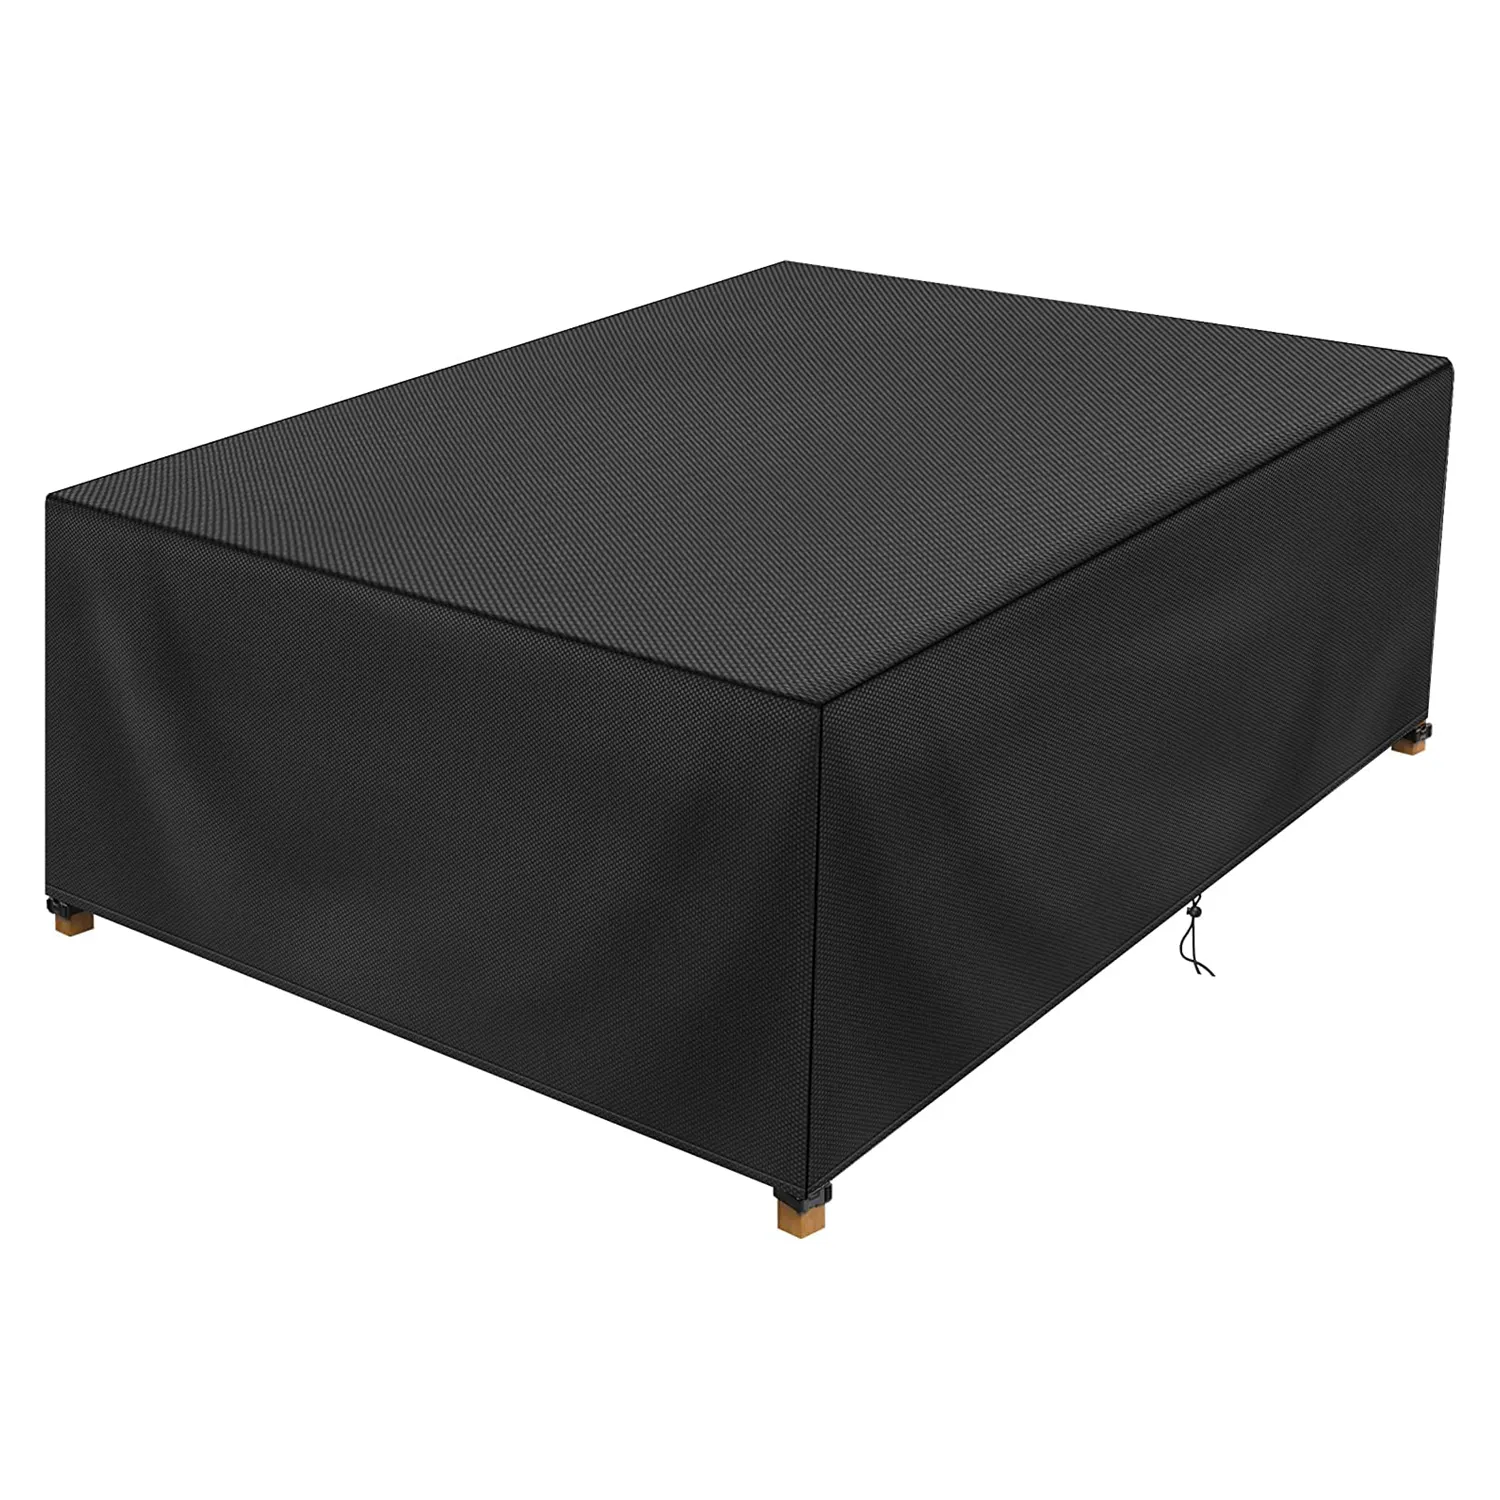 100% couverture de Table extérieure étanche rectangulaire noir meubles de Patio couverture de Table pour pique-nique Tables basses chaises et canapés